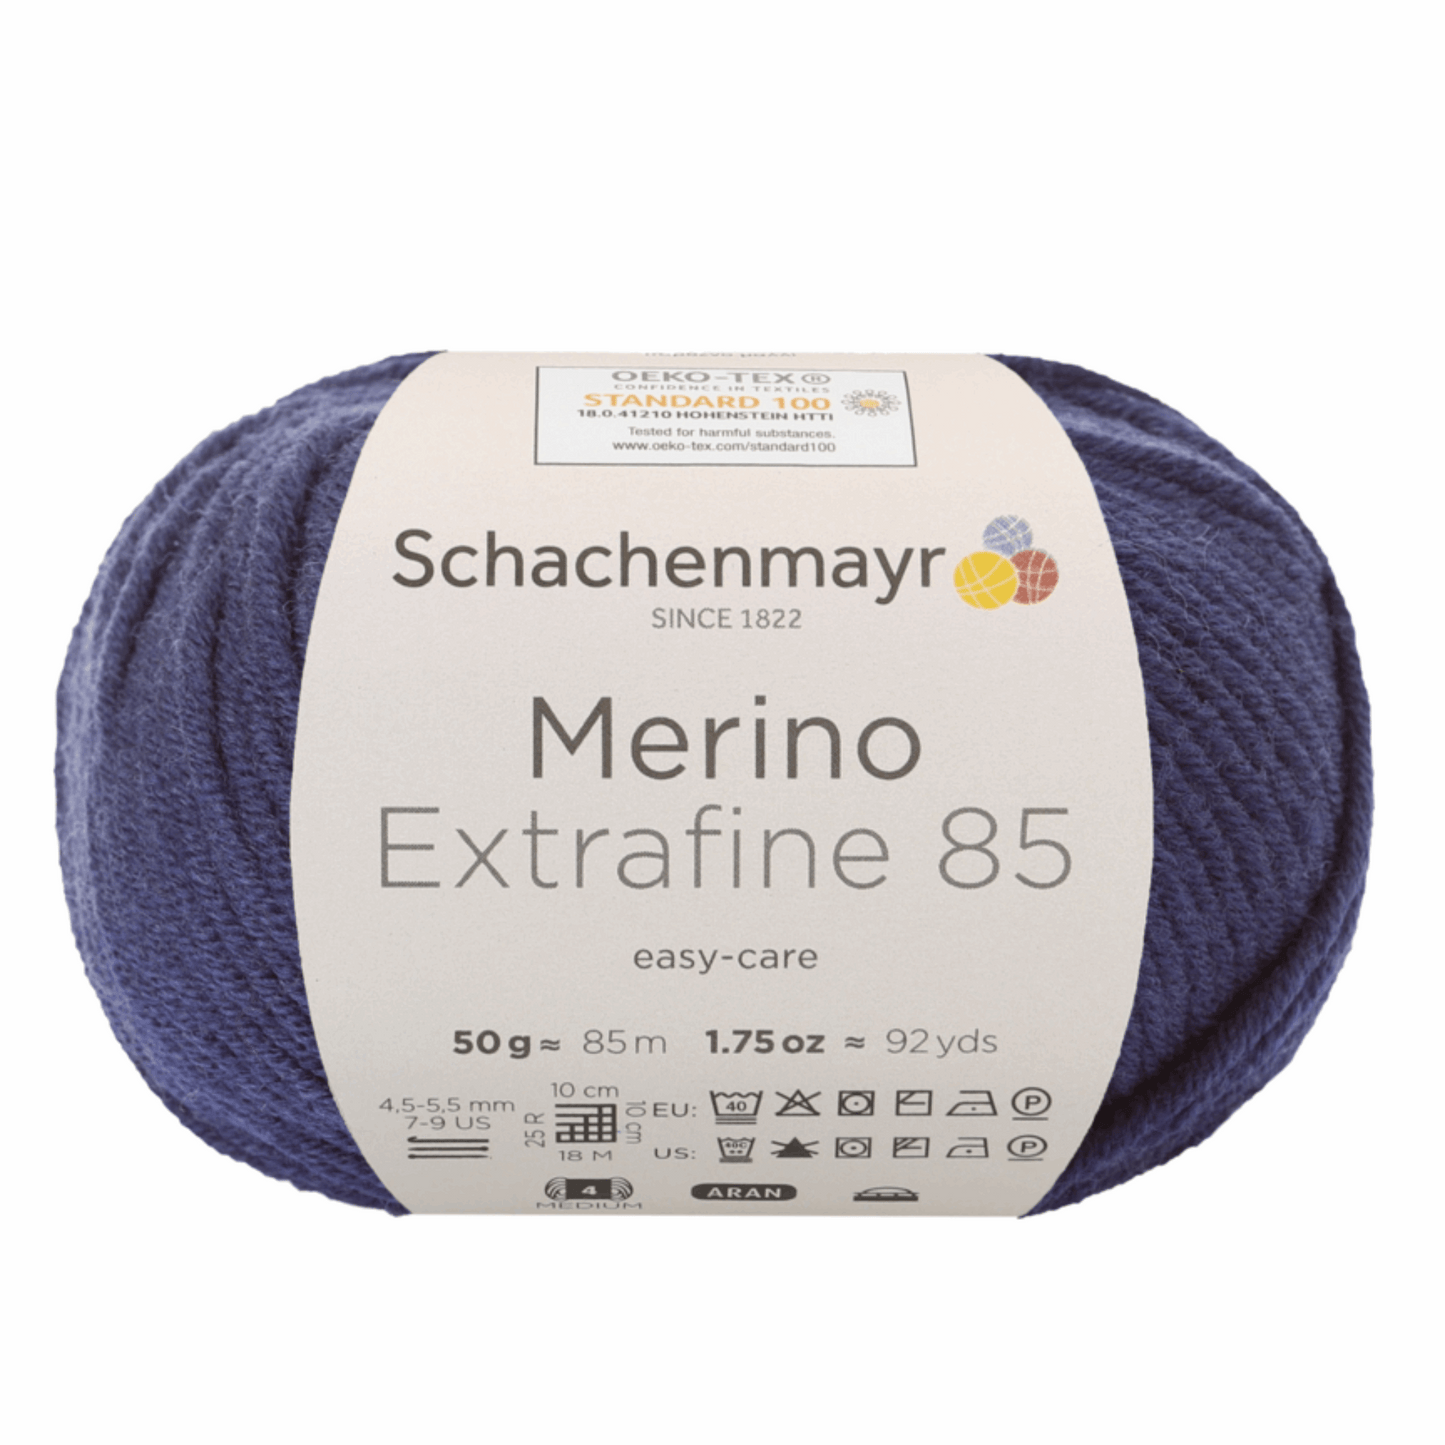 Schachenmayr Merino extrafine 85 50G, 90554, Farbe marine 250